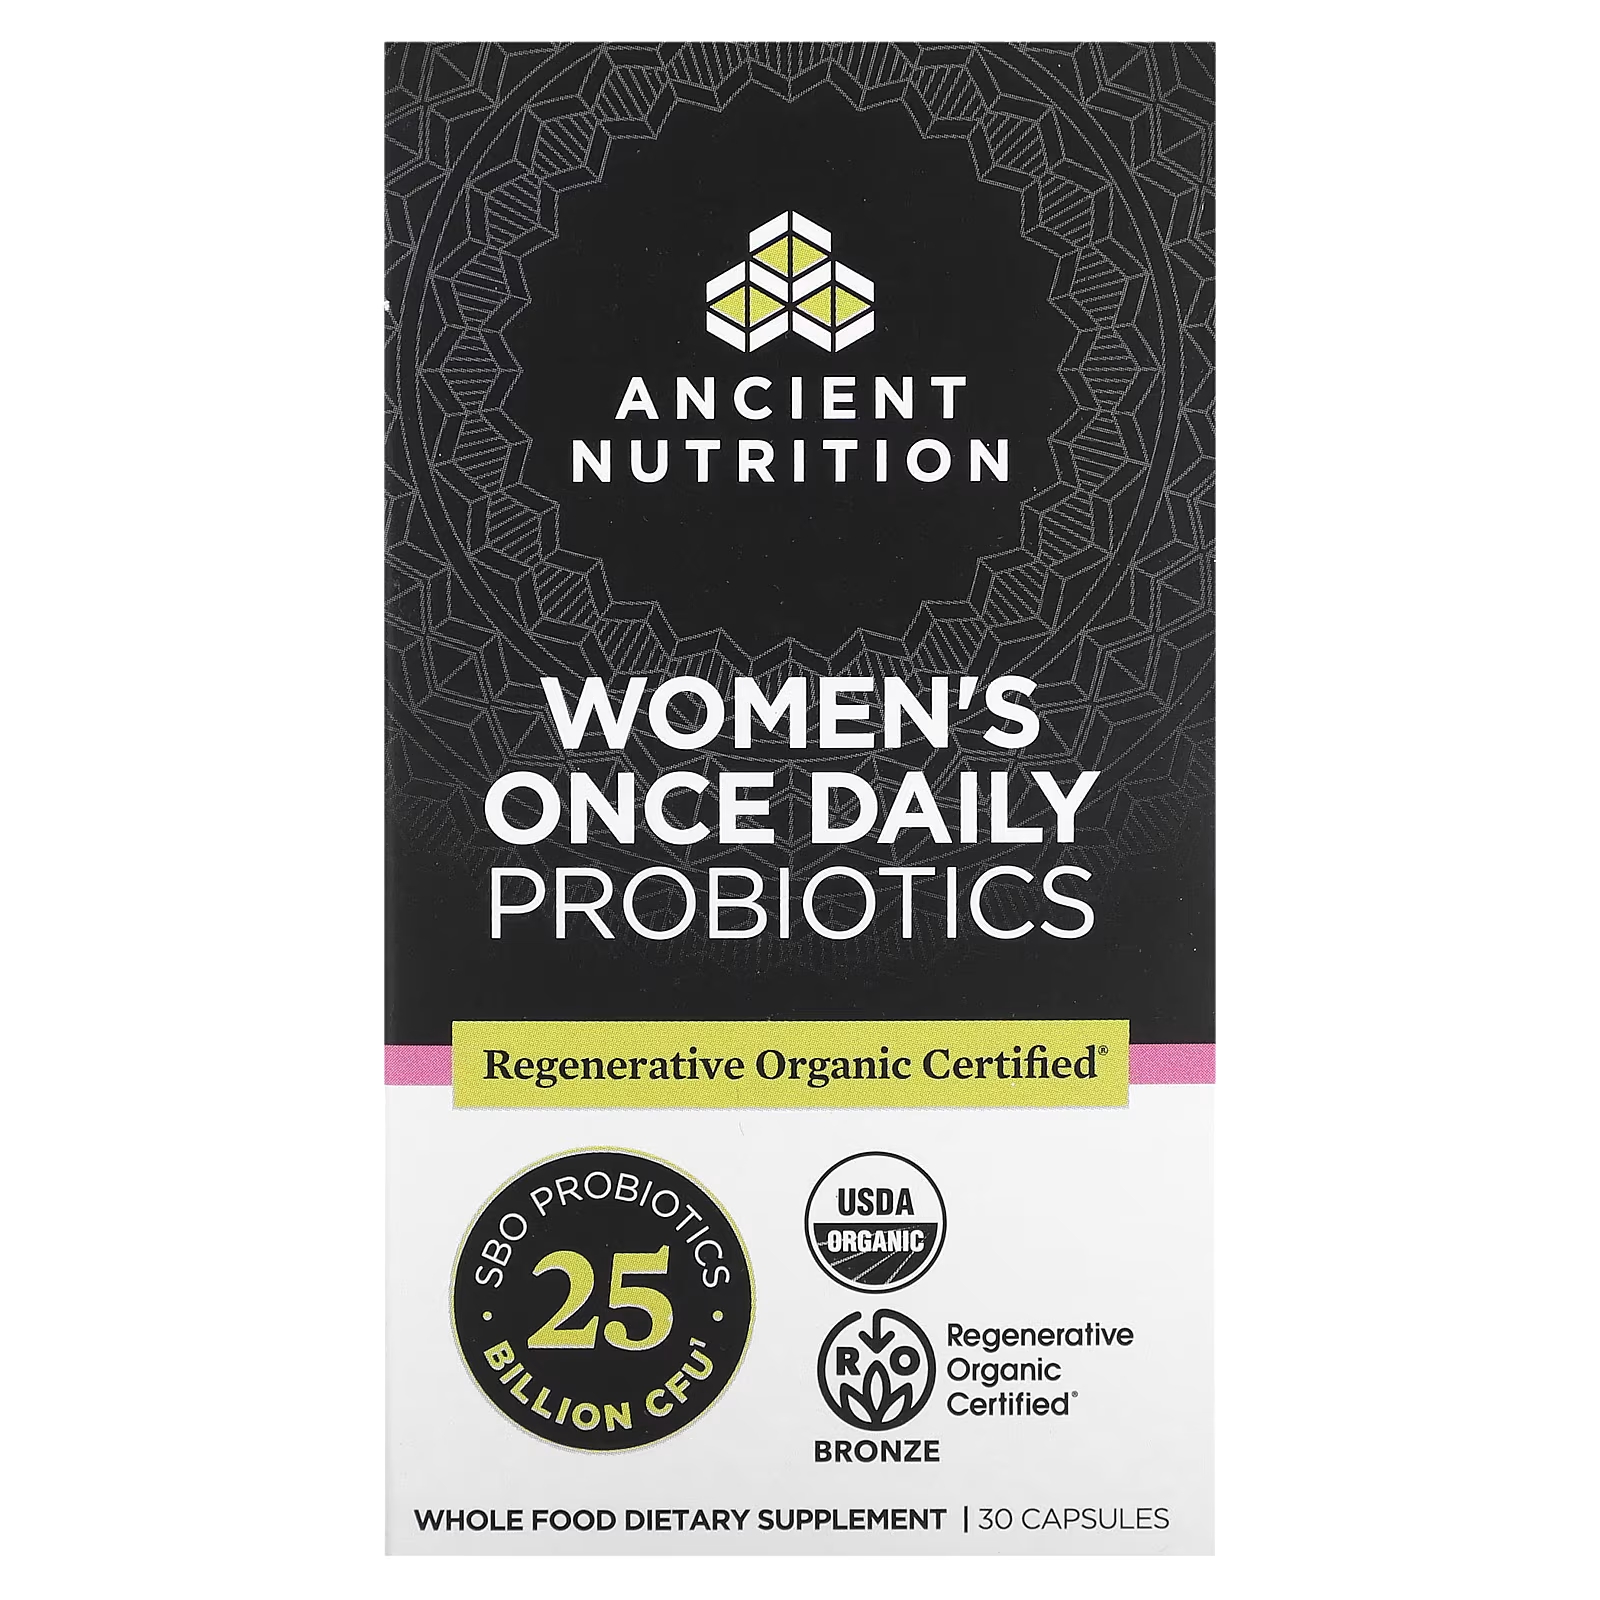 Пробиотики для женщин Ancient Nutrition один раз в день, 30 капсул пробиотики ancient nutrition повышенной силы 60 капсул